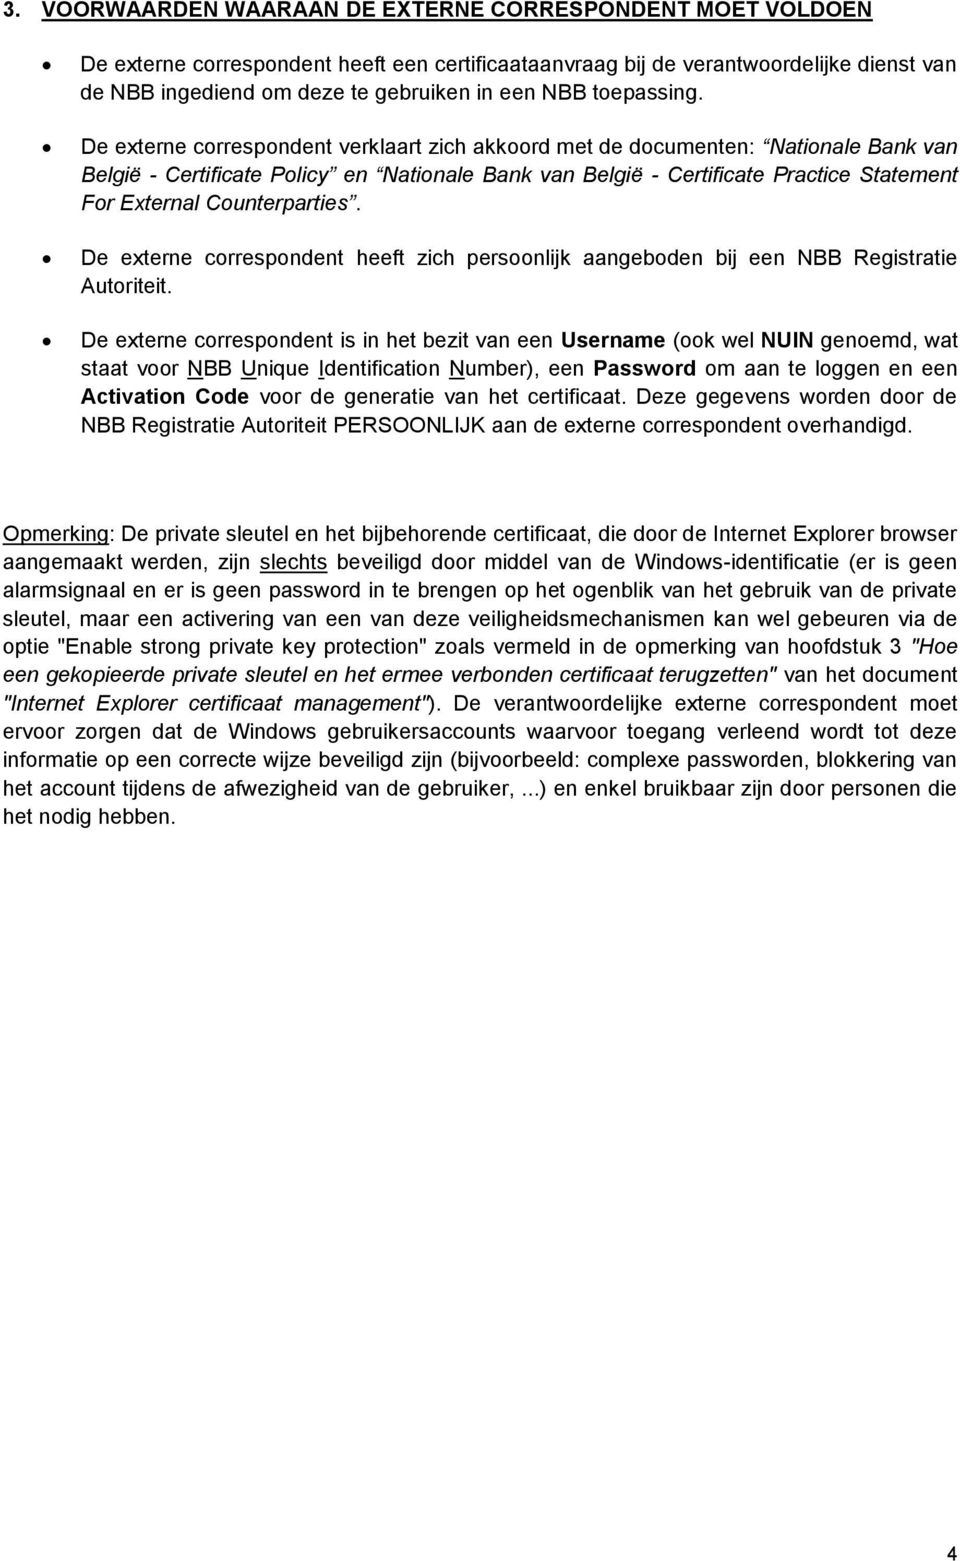 De externe correspondent verklaart zich akkoord met de documenten: Nationale Bank van België - Certificate Policy en Nationale Bank van België - Certificate Practice Statement For External